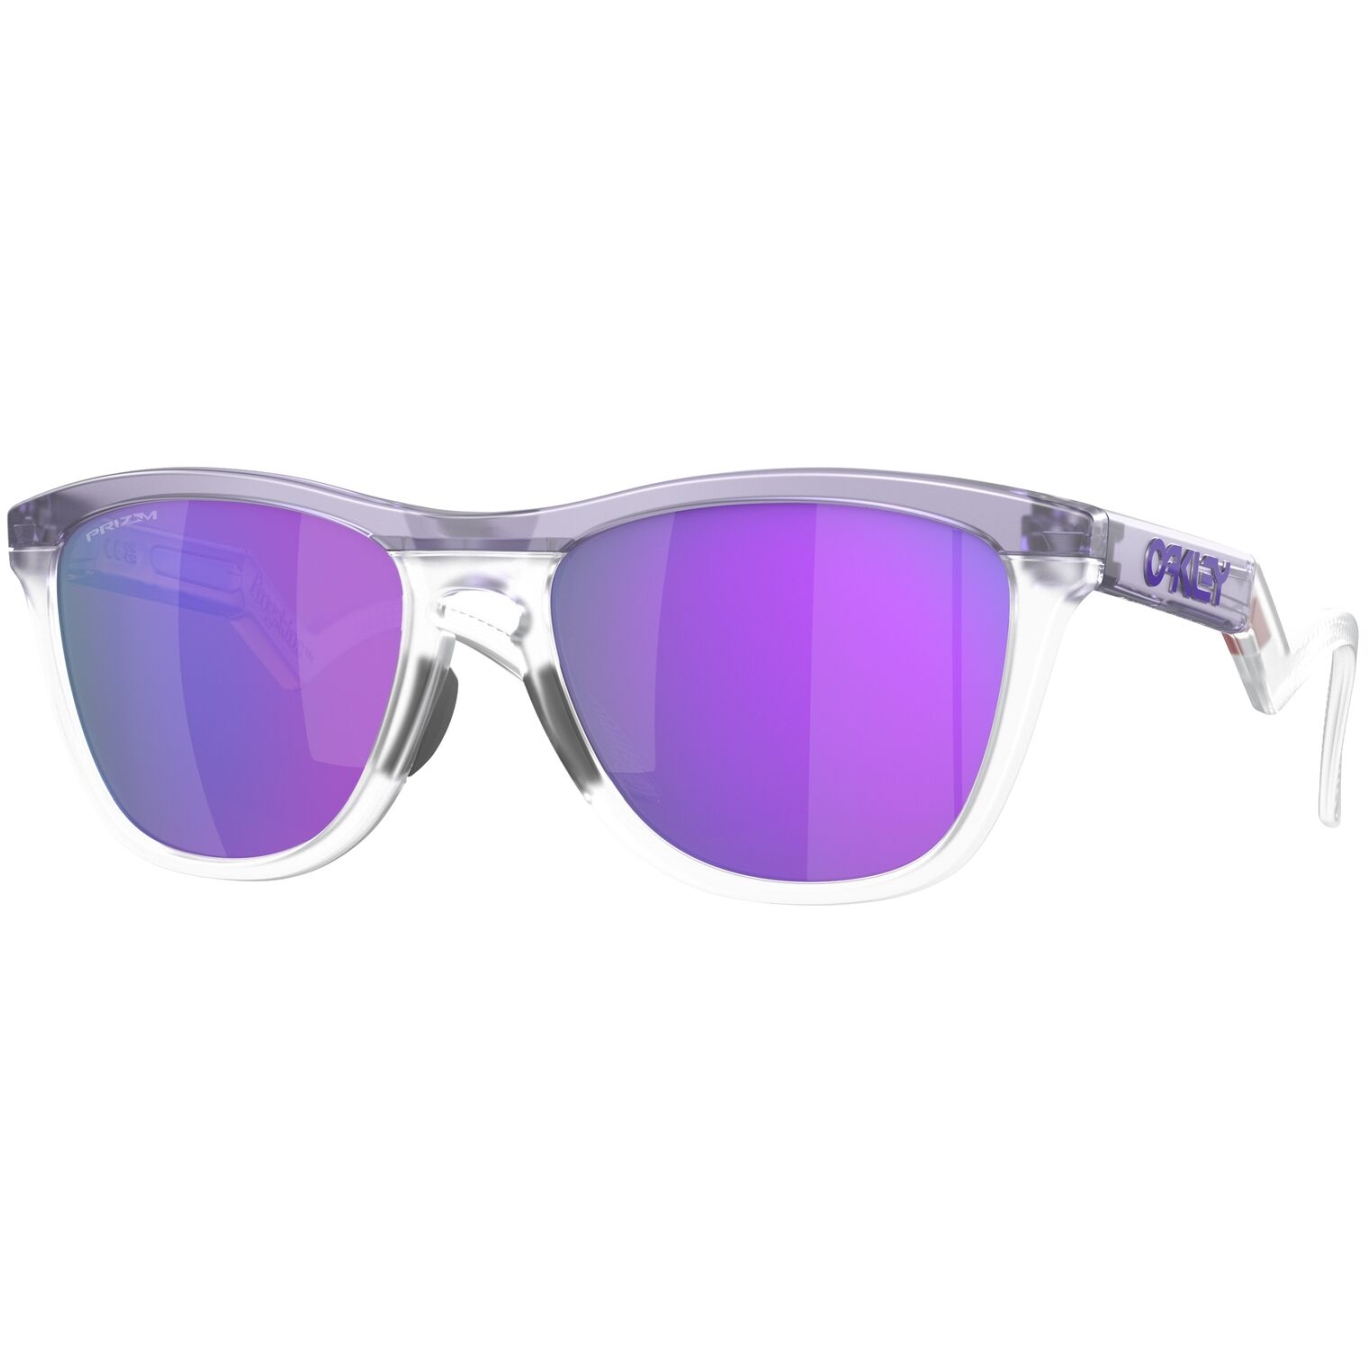 Productfoto van Oakley Frogskins Hybrid Zonnebril - Matte Trans Lilac/Clear/Prizm Violet - OO9289-928901